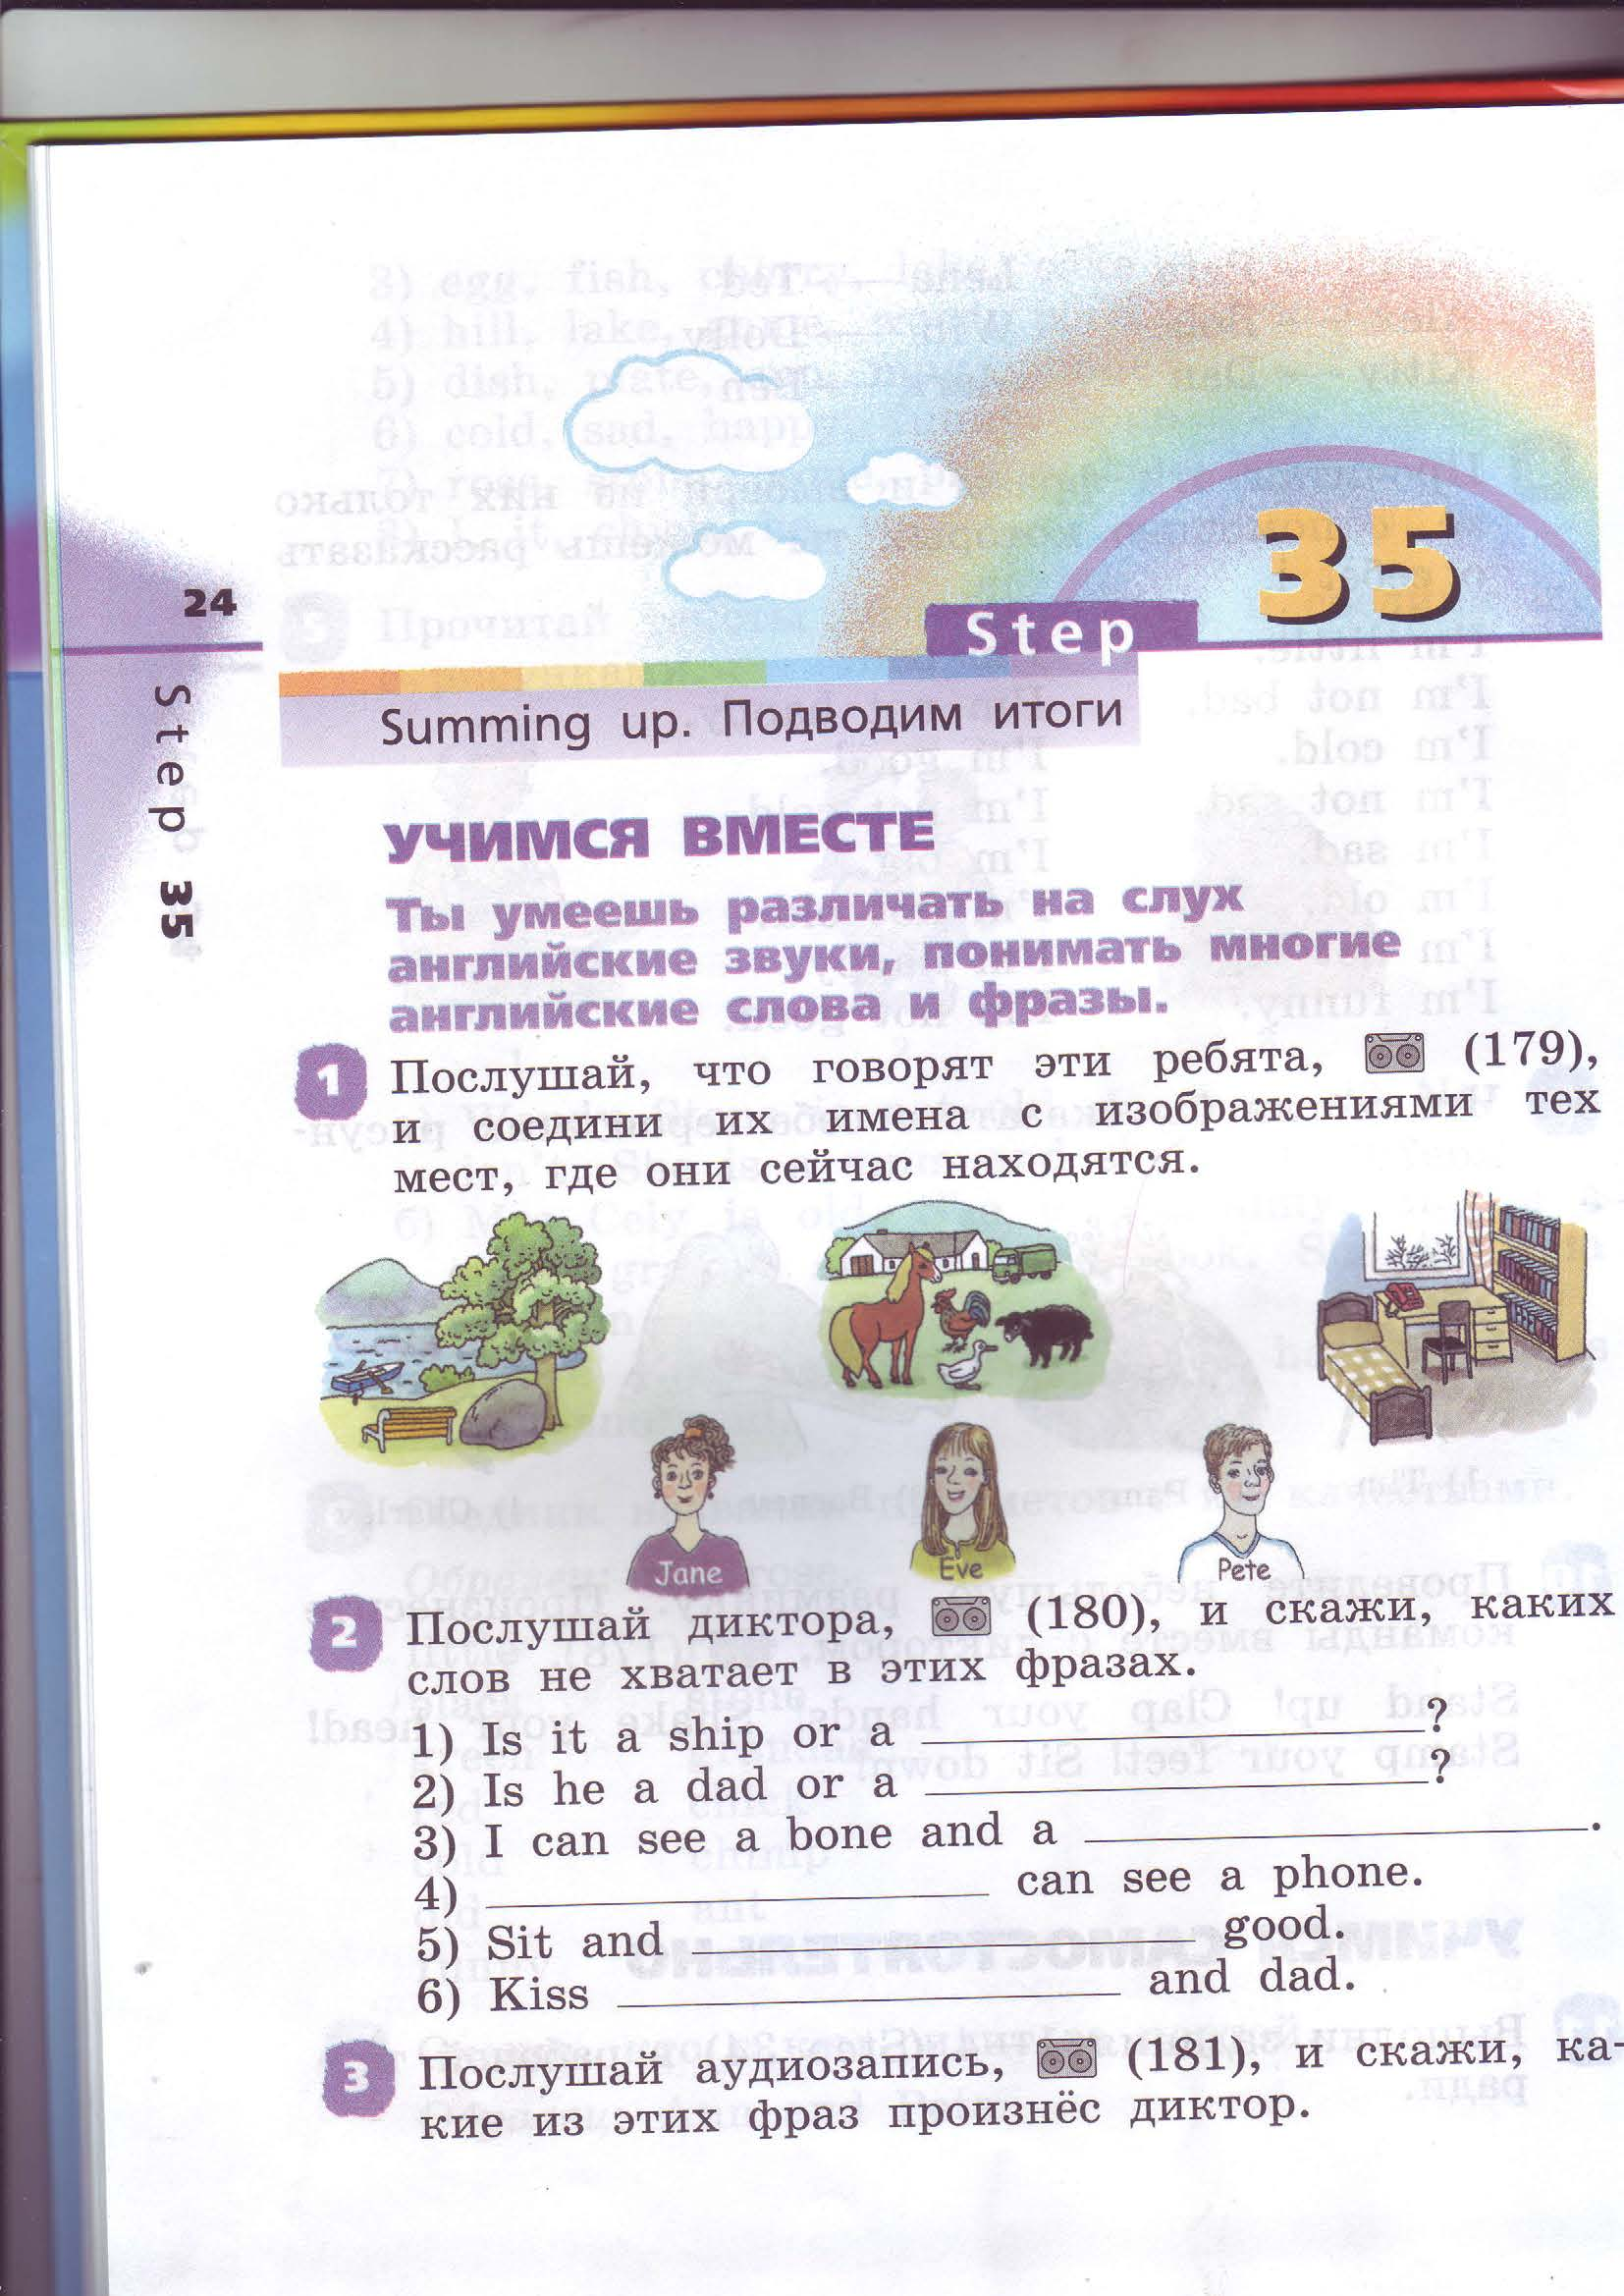 Контрольная работа для 2 класса учебник Rainbow English Step 35